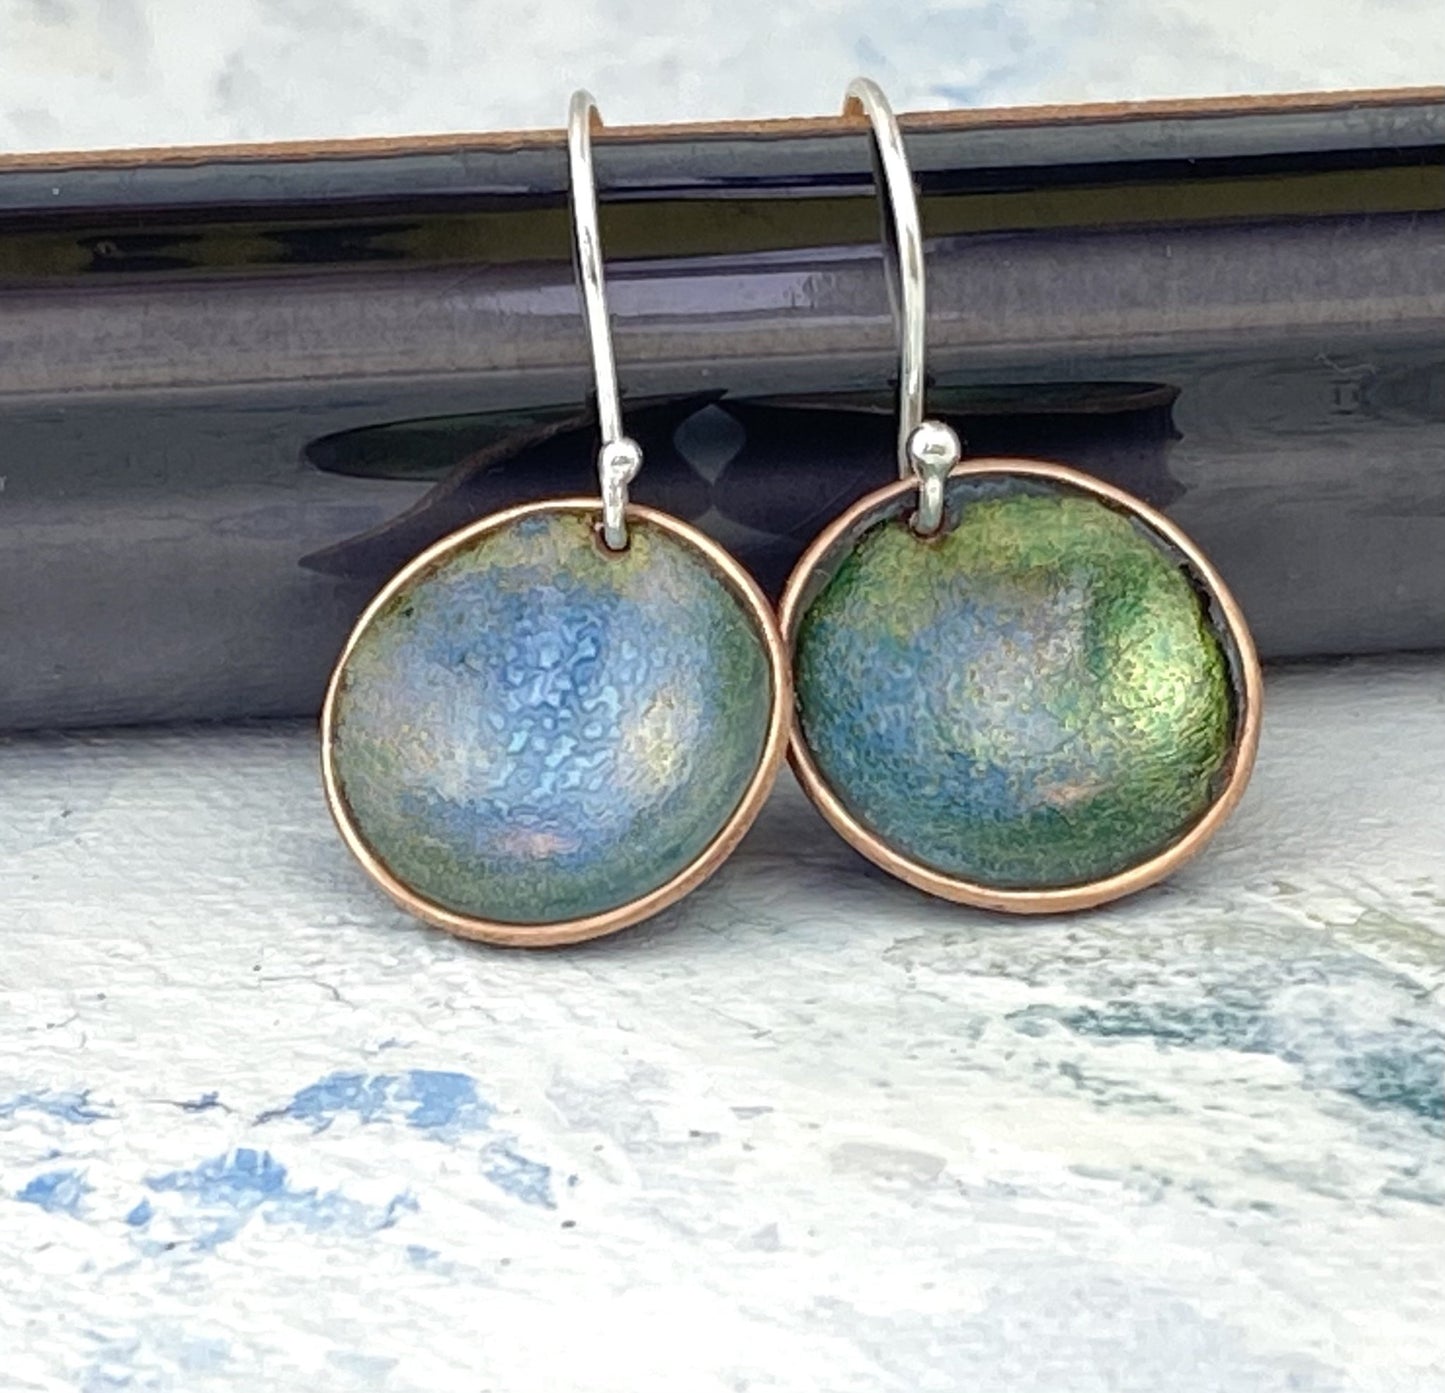 Enamel 'bowl' drop earrings. Little copper bowls filled with enamel on sterling silver wires. - Katie Johnston Jewellery